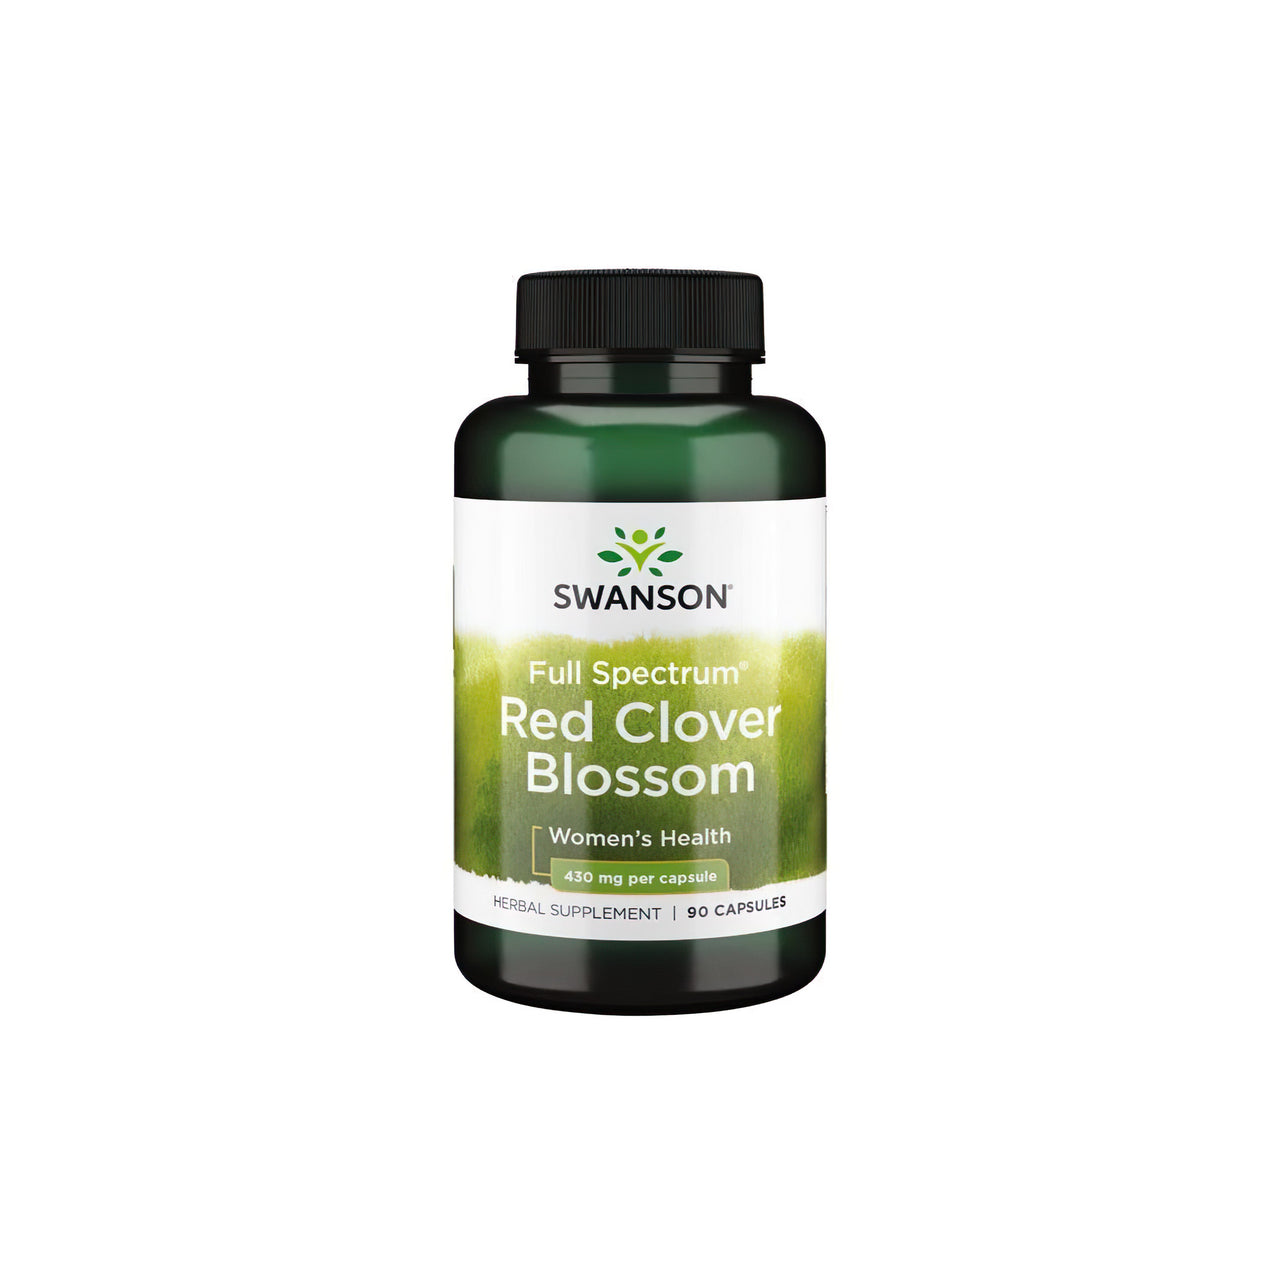 Swanson El Trébol Rojo en Flor 430 mg 90 cáps. es un remedio natural que puede proporcionar alivio durante la menopausia o el ciclo menstrual.